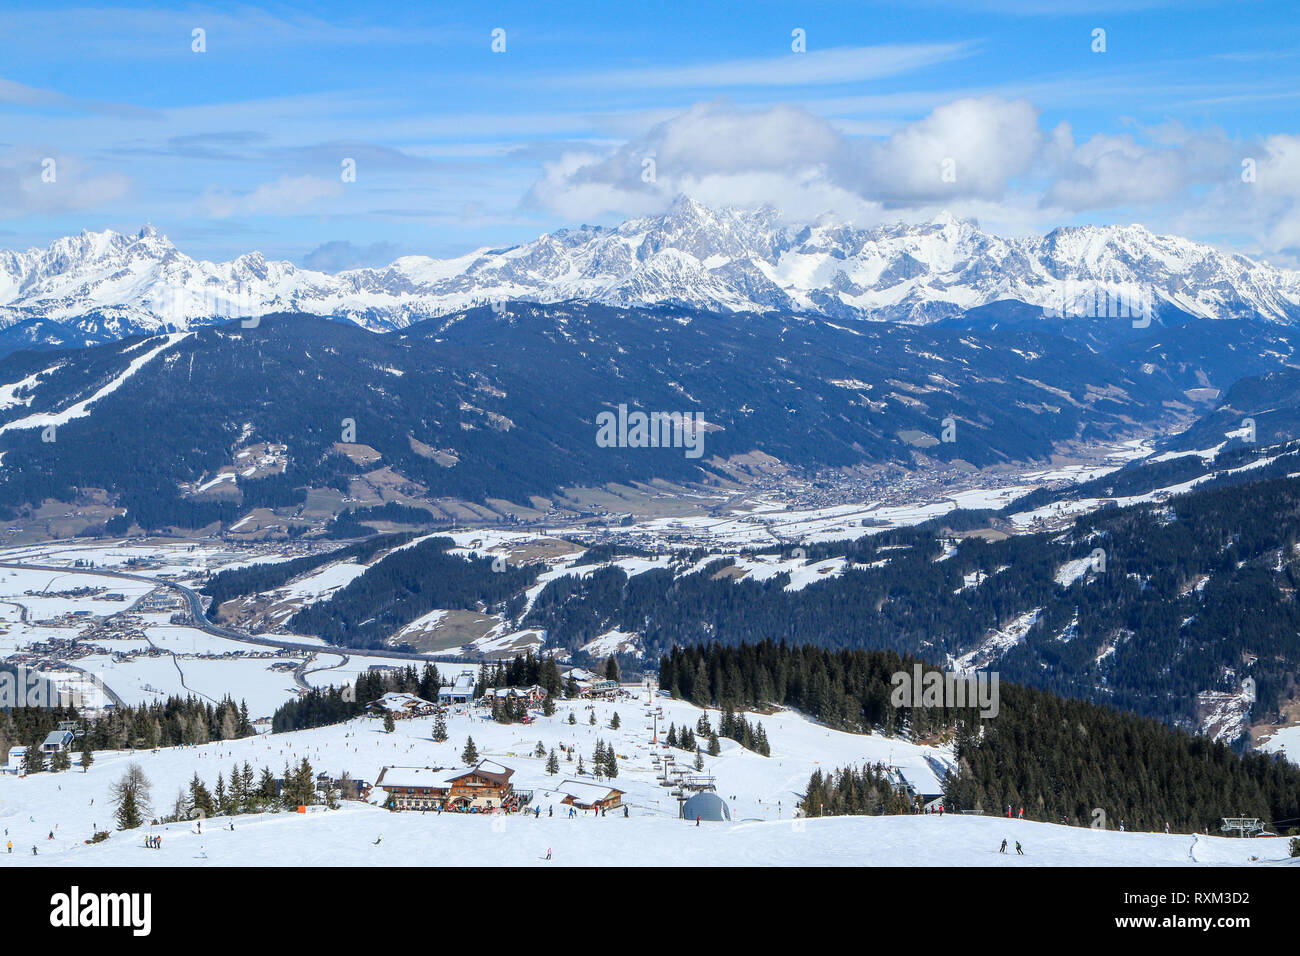 Ein Bild von der Skistation in den österreichischen Alpen. Schnee und Wetter perfekt sind, Hänge sind leer. Skifahren ist Leidenschaft in diesen Bedingungen. Stockfoto